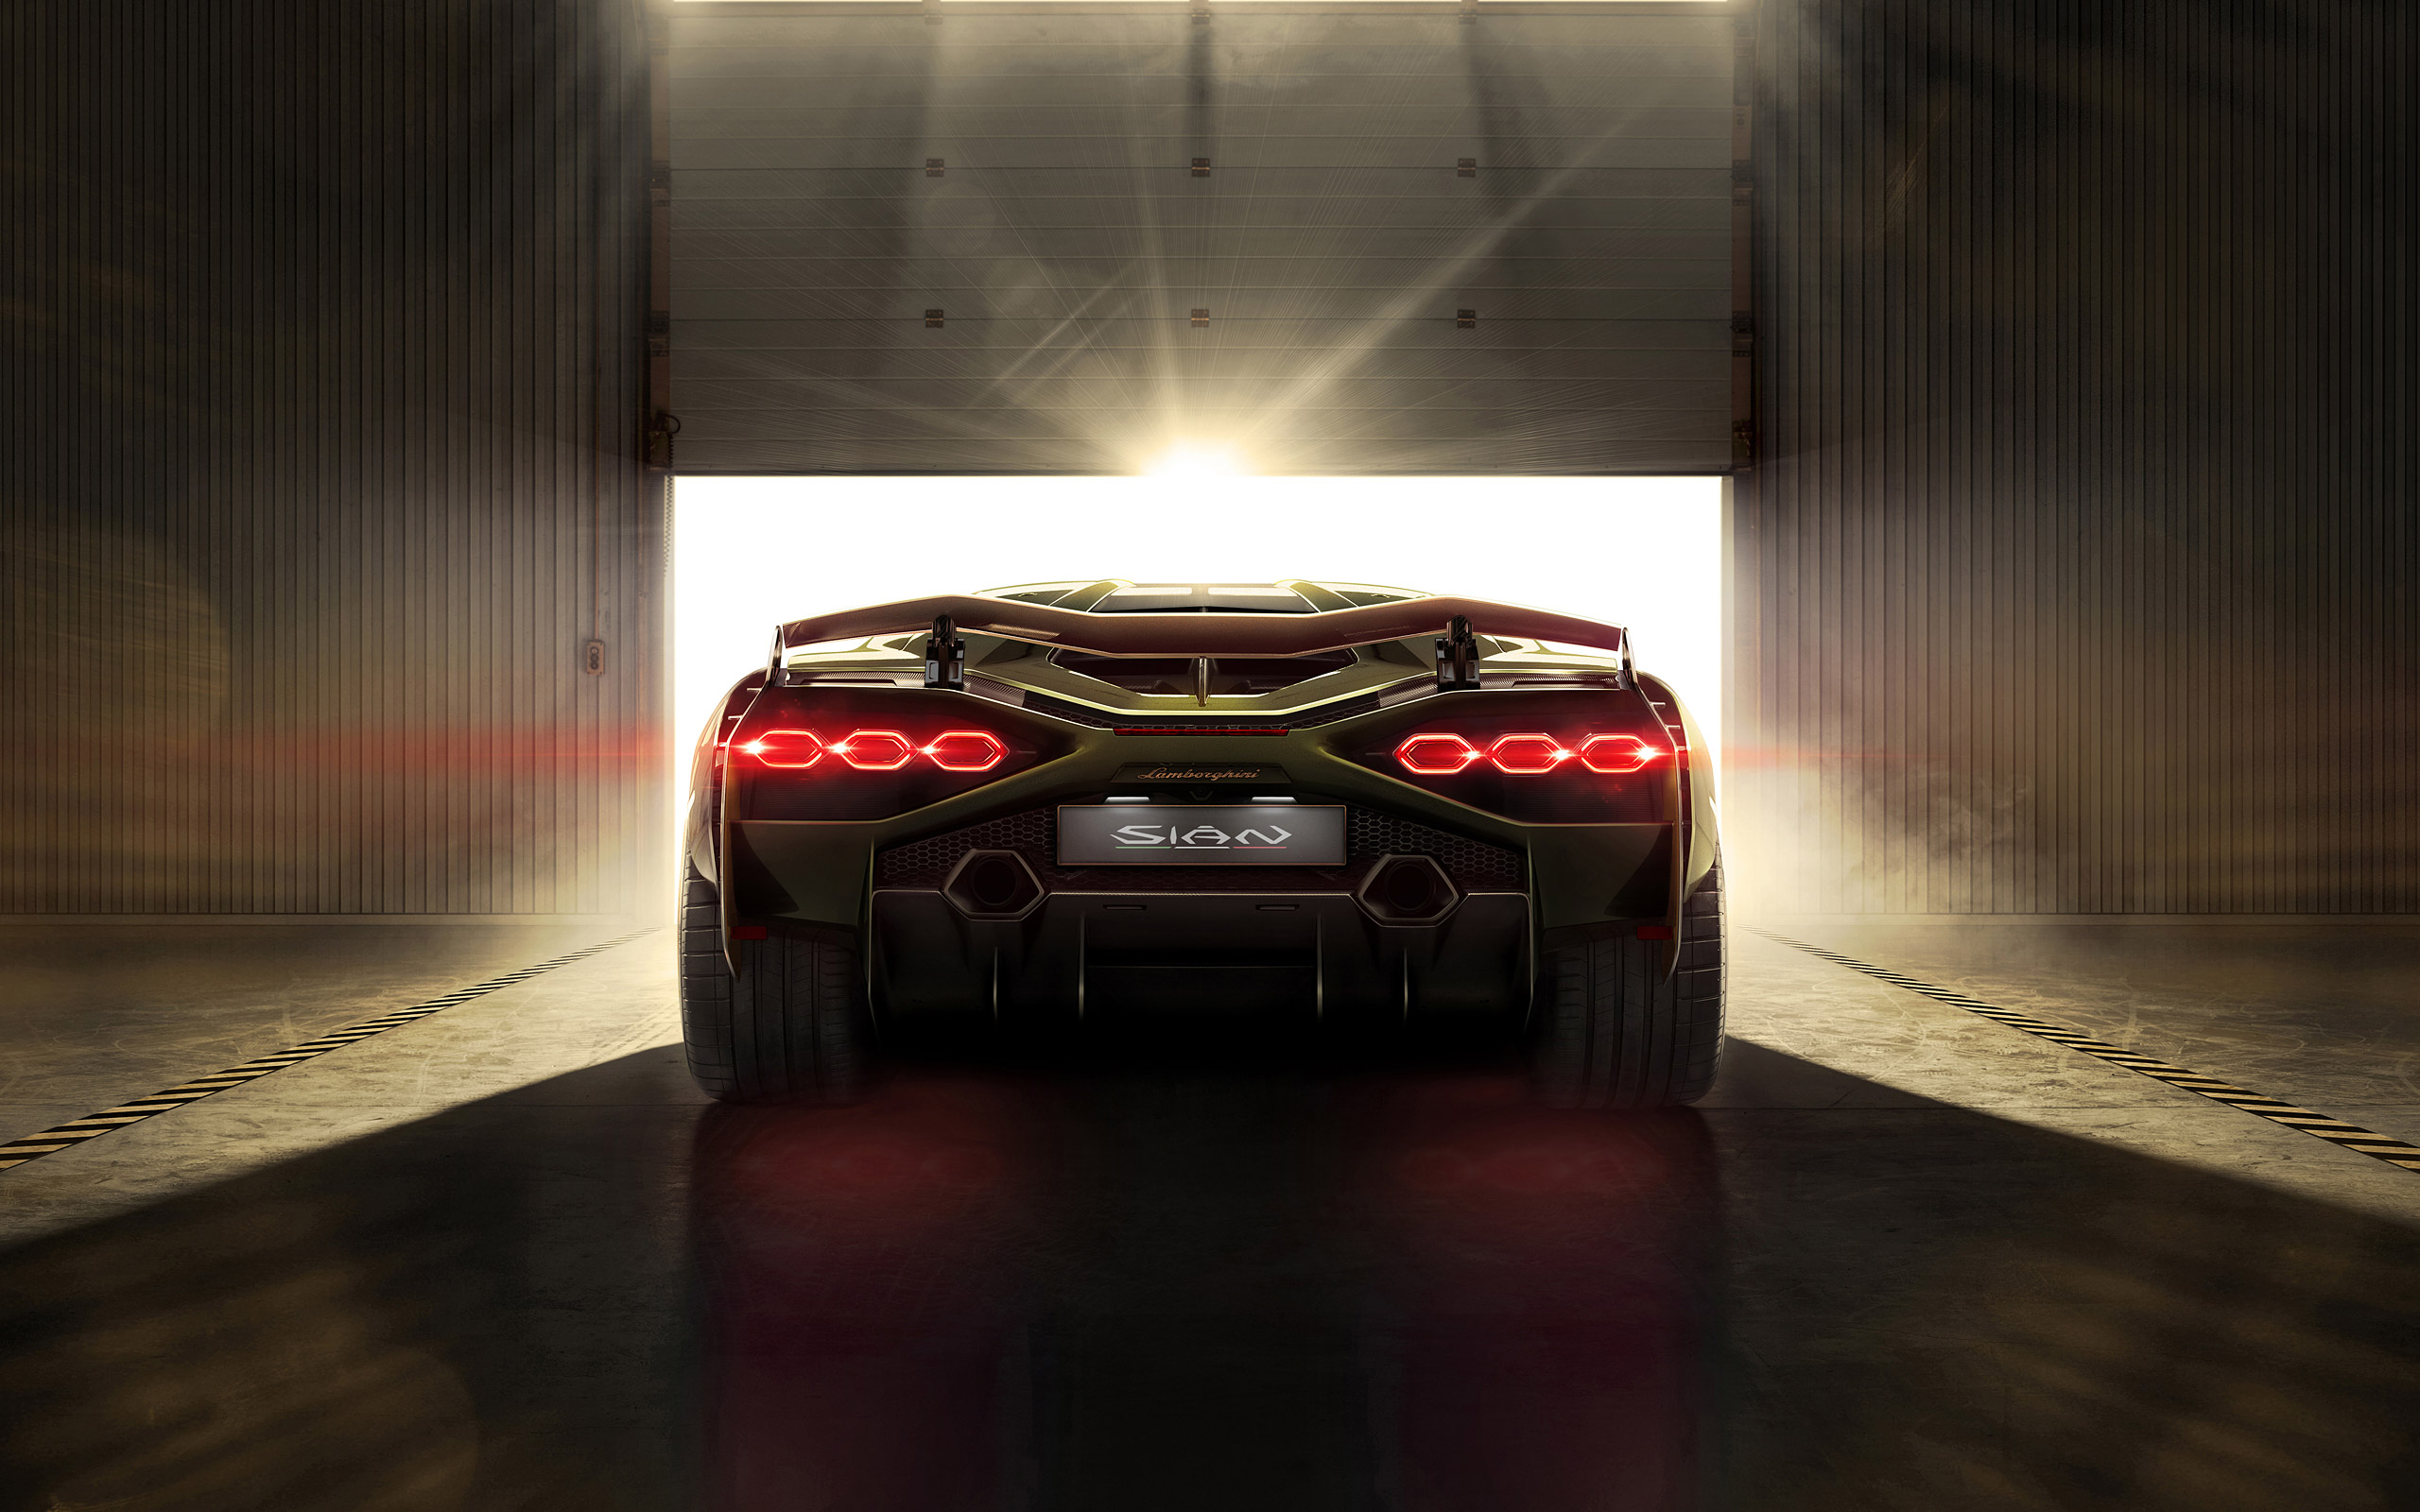  2020 Lamborghini Sian Wallpaper.